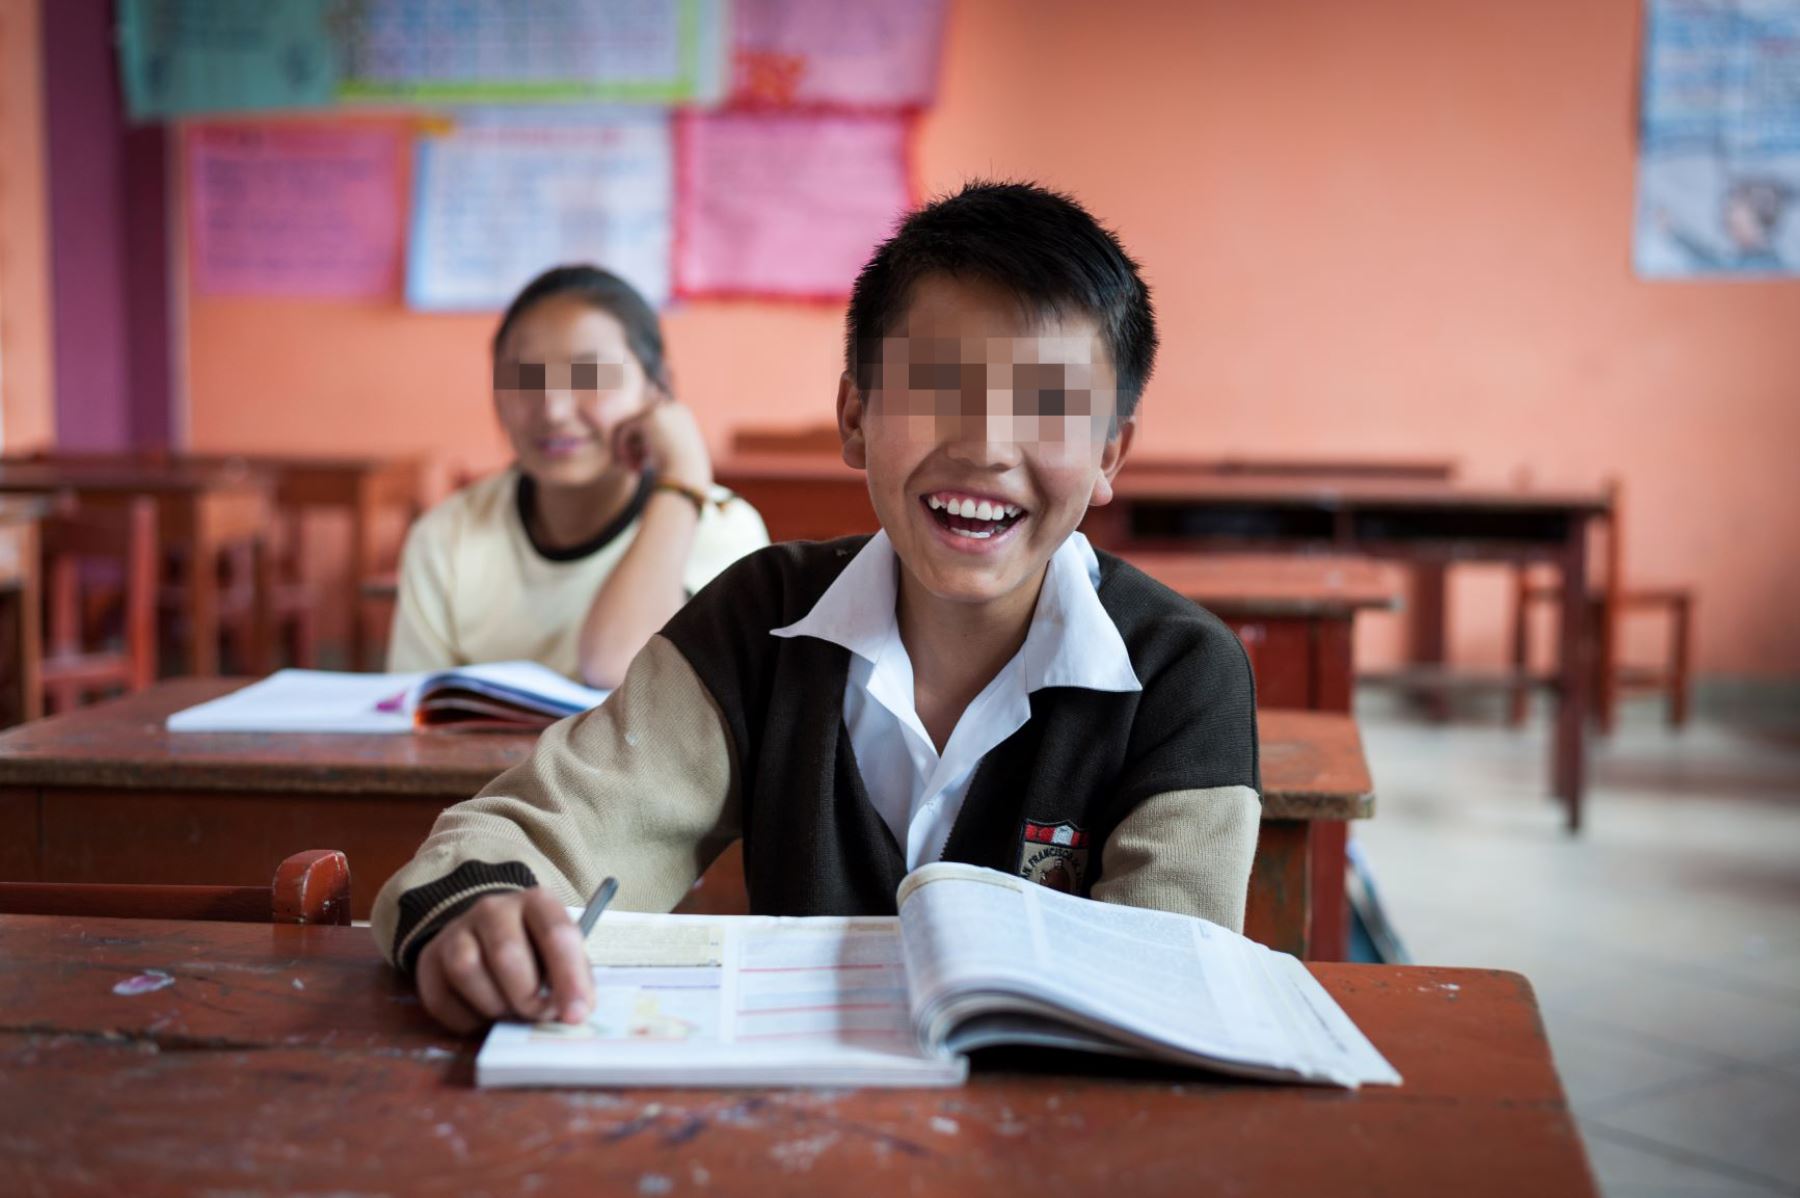 La ONG World Vision Perú acaba de lanzar una propuesta ciudadana para reducir los niveles de deserción escolar de miles de niños y adolescentes en todo el país.